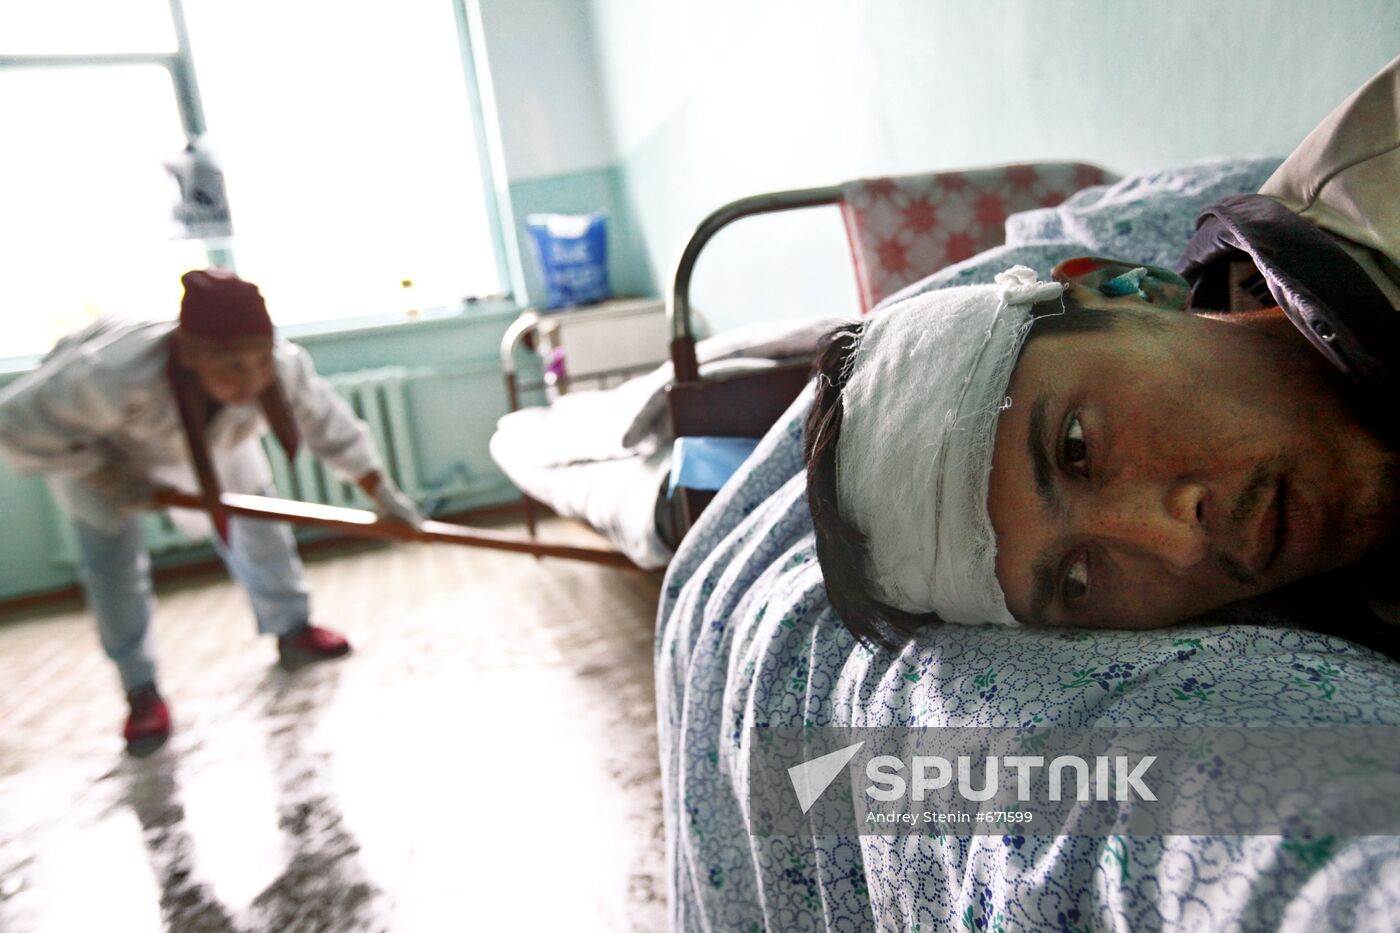 Injured man at hospital in Suzaksky Region